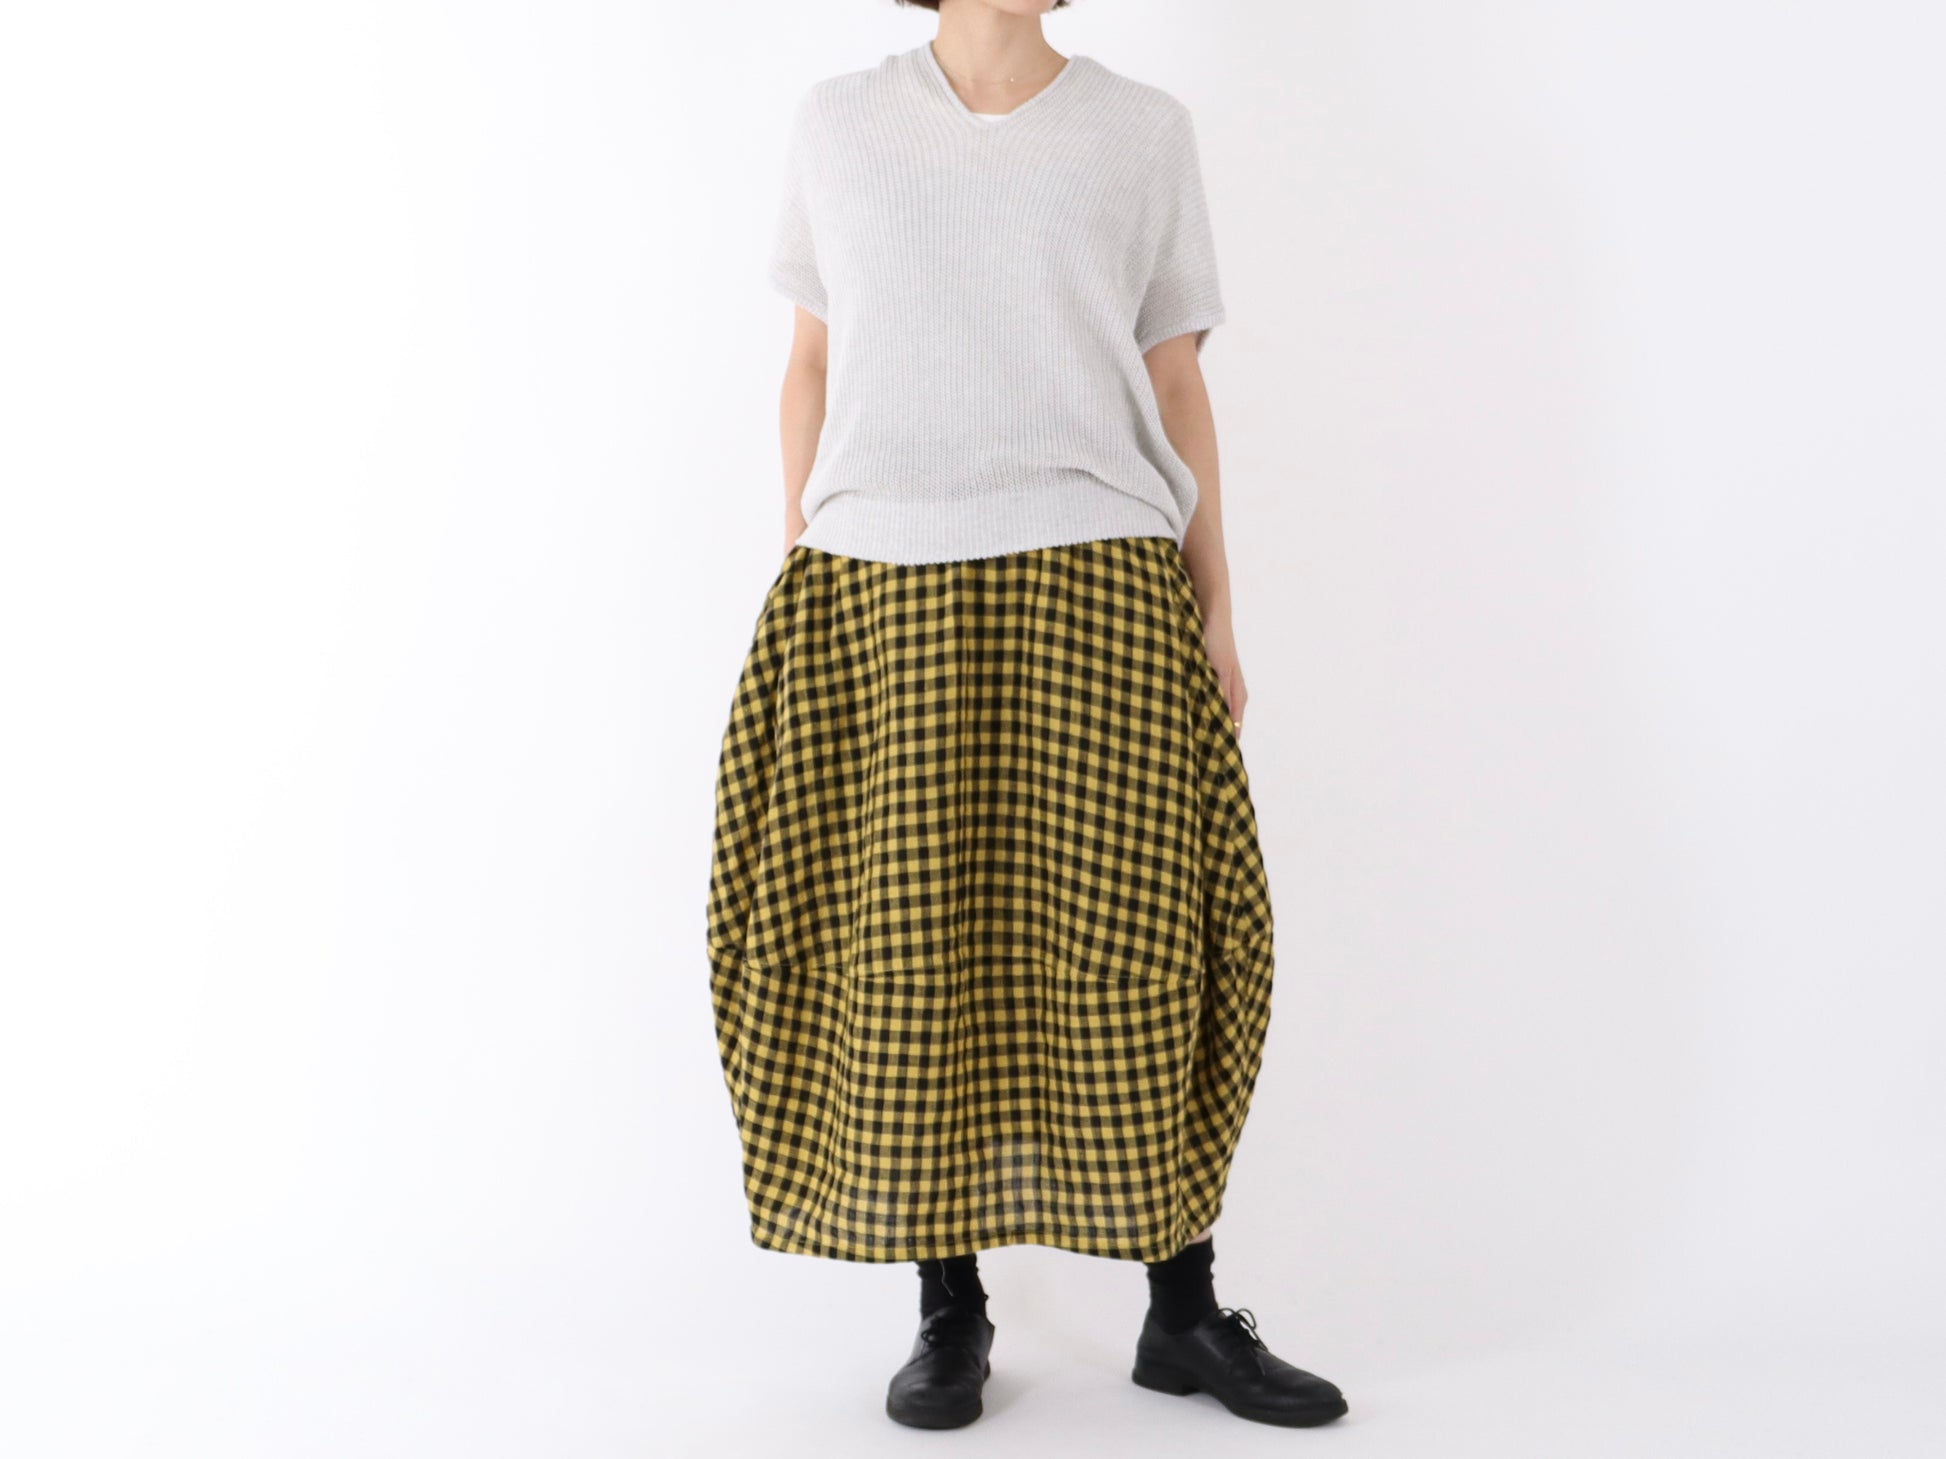 【限定色】日本奶奶家 比利時麻格紋繭裙 2色 size